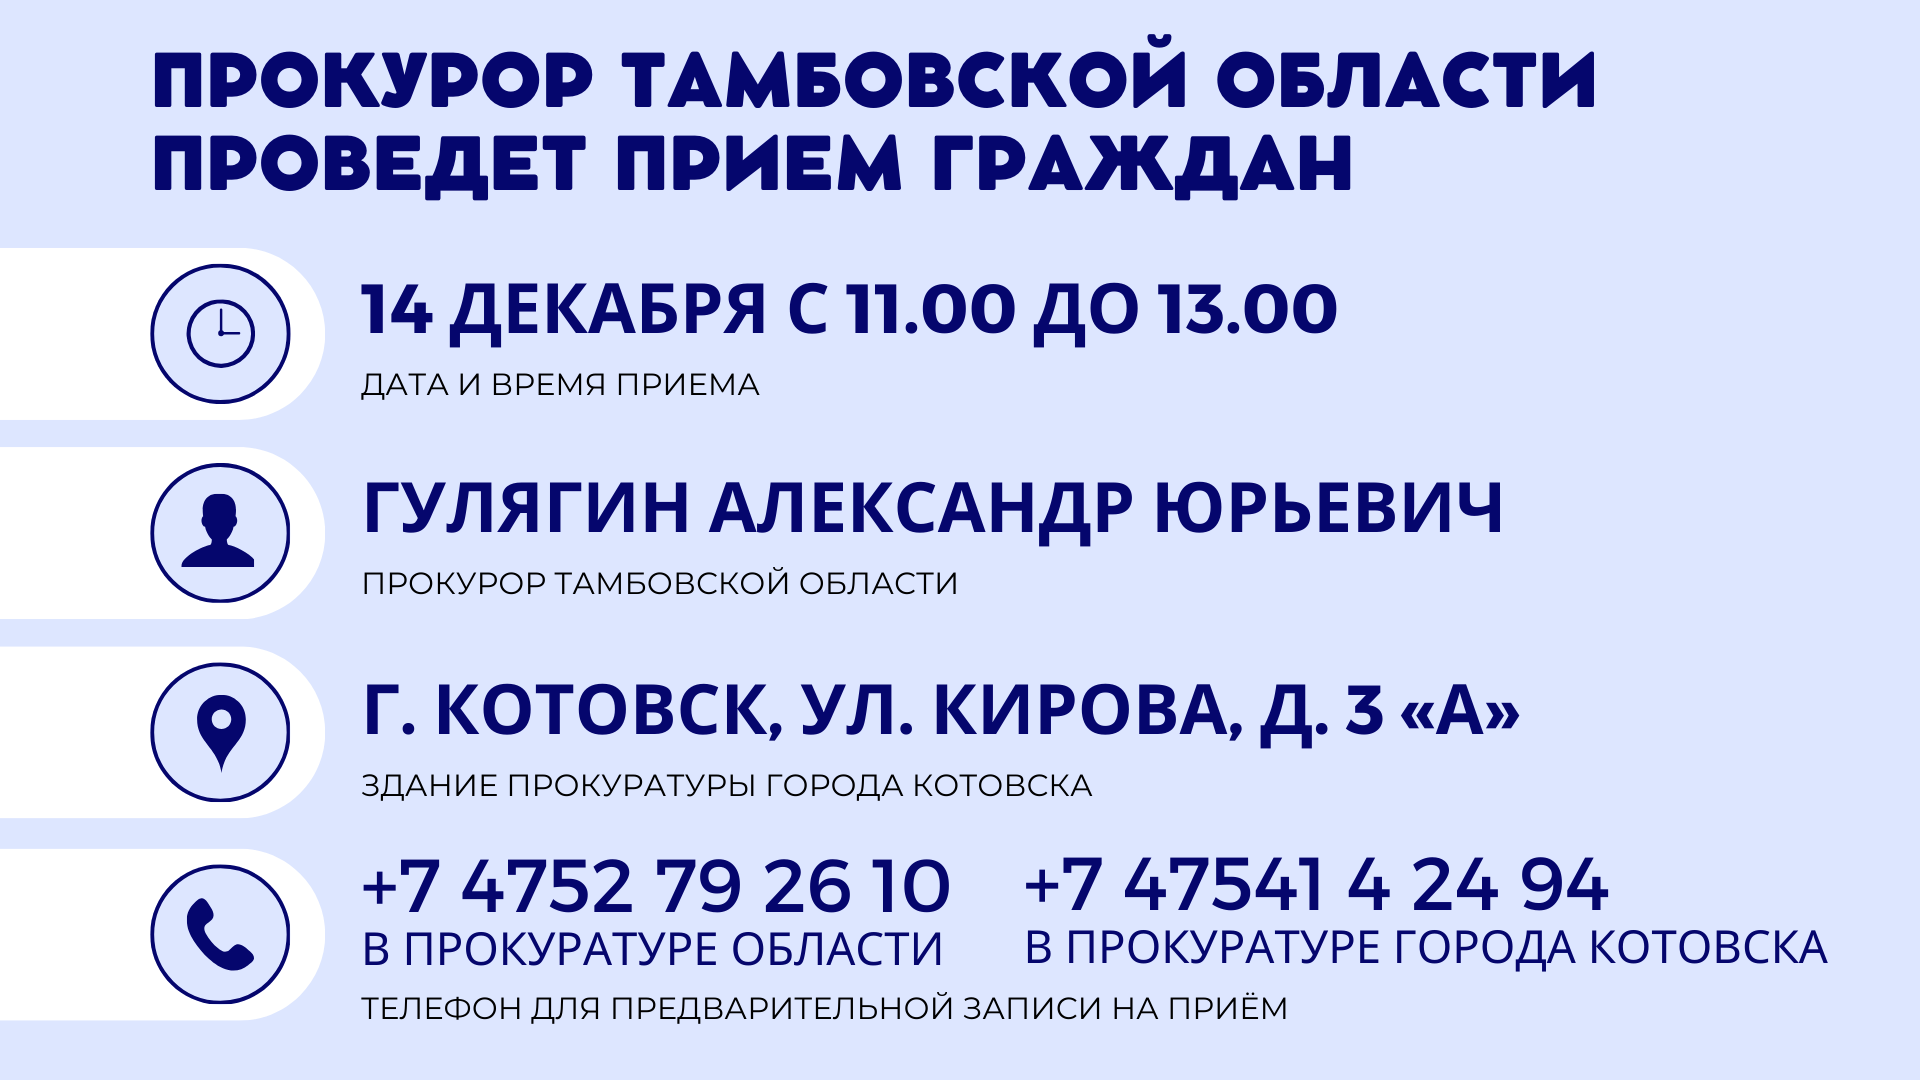 Прокурор Тамбовской области проведет прием граждан в Котовске.